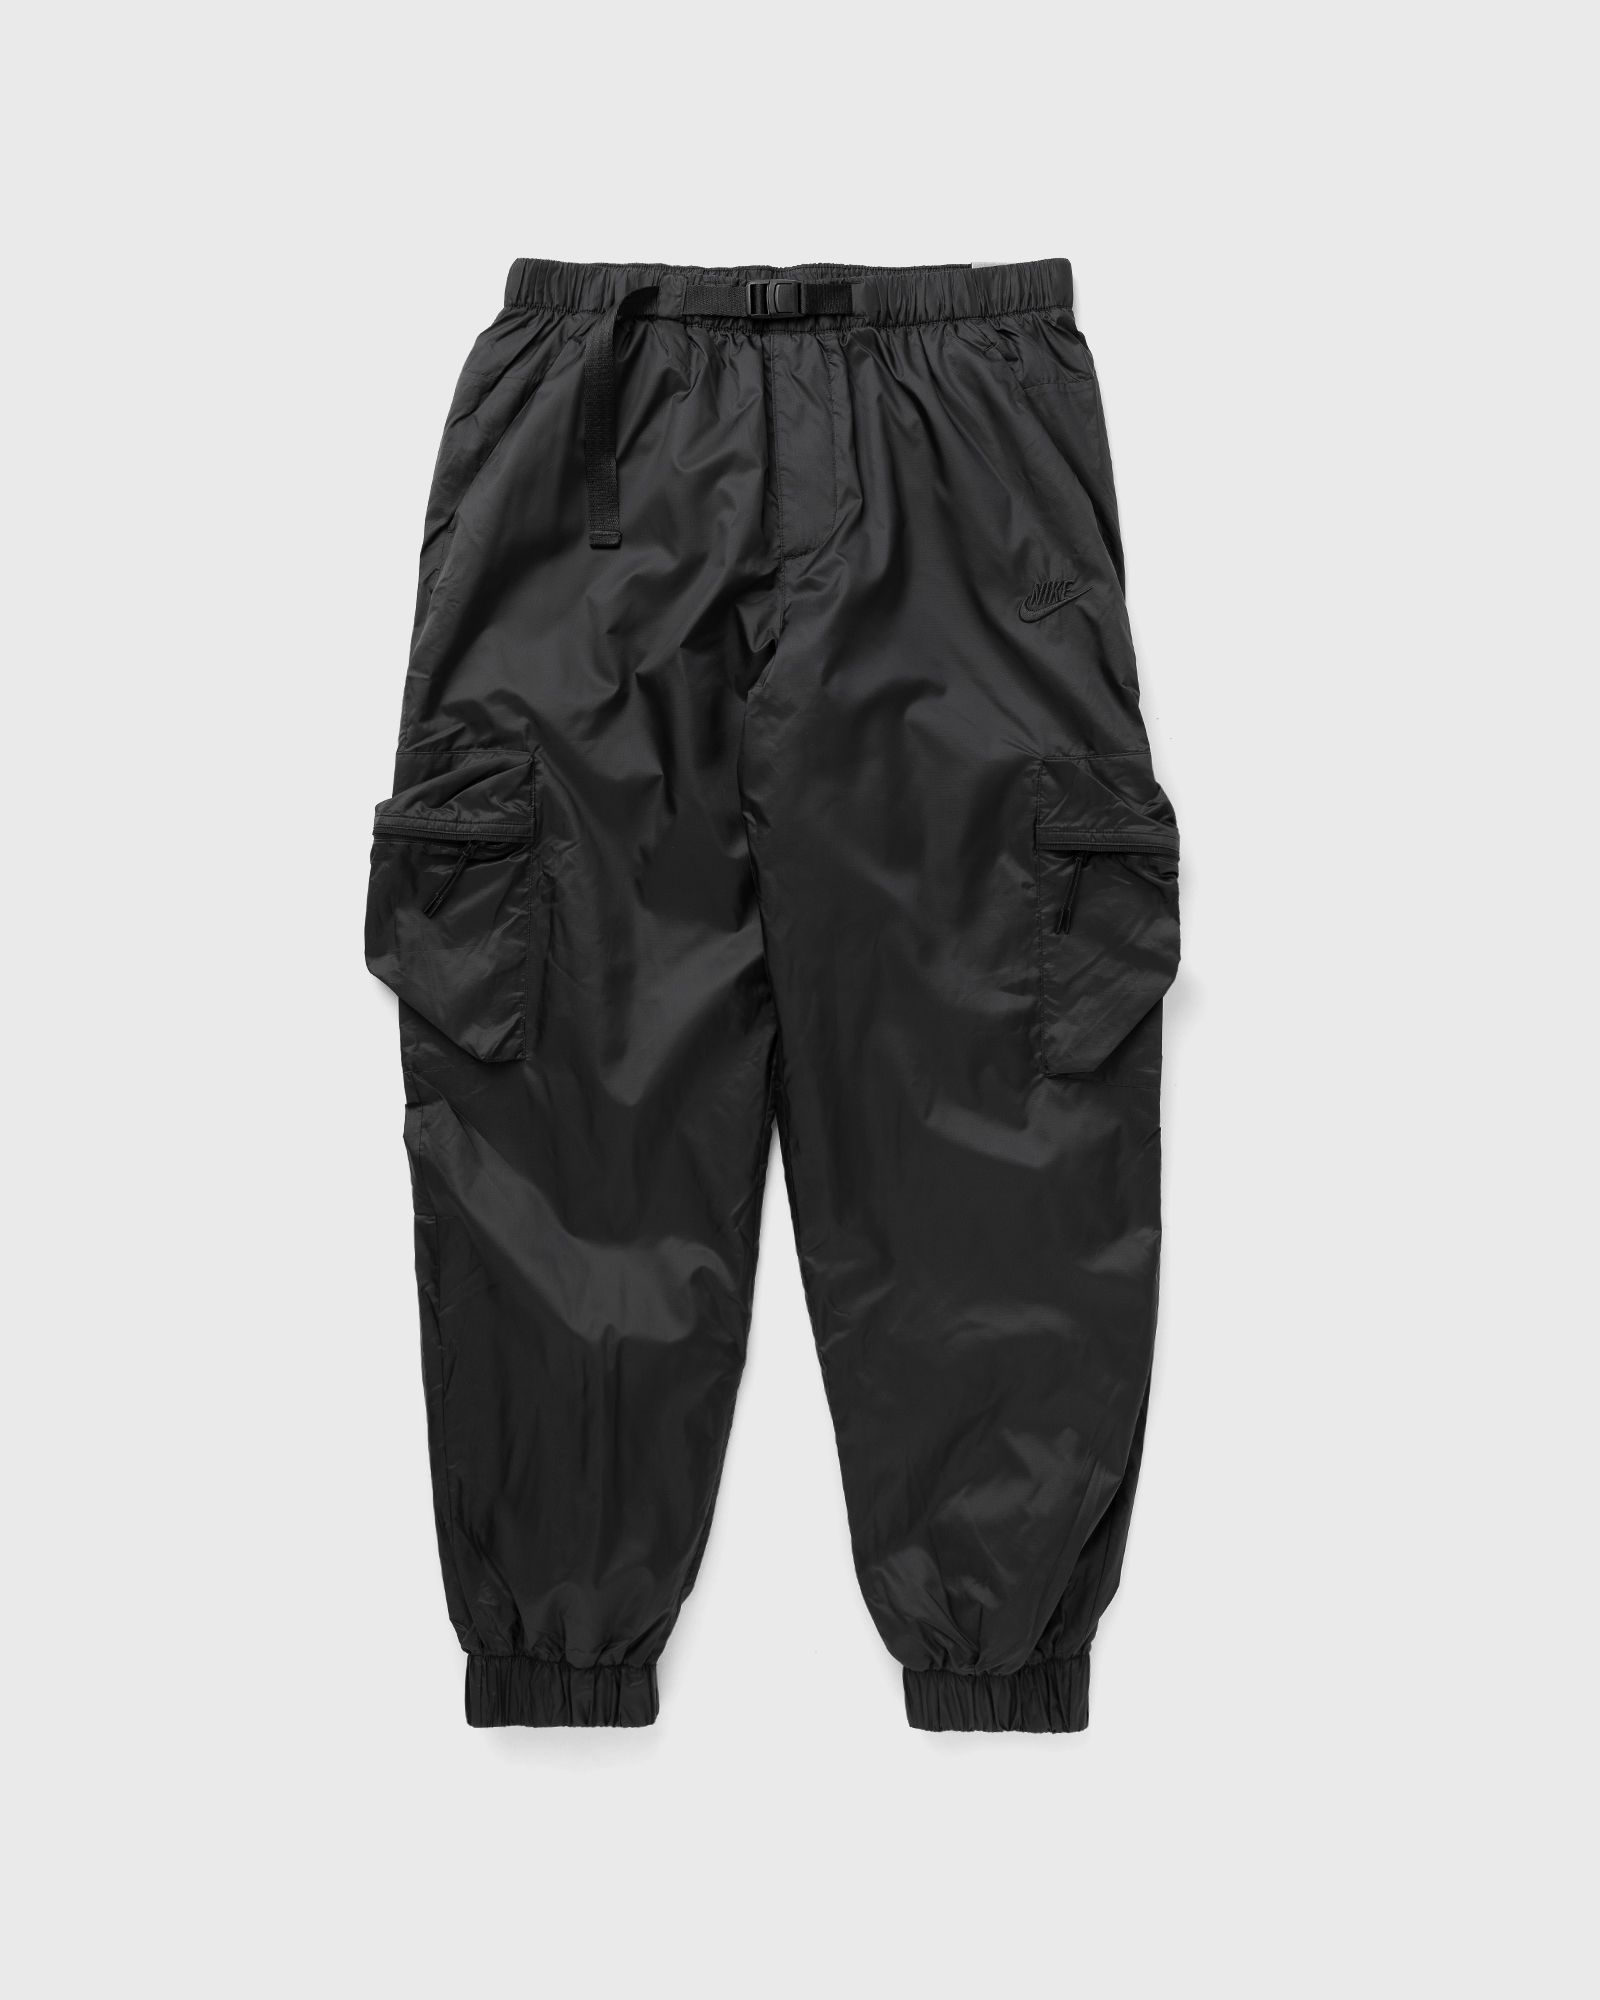 Nike - tech lined woven pant men cargo pants black in größe:xl